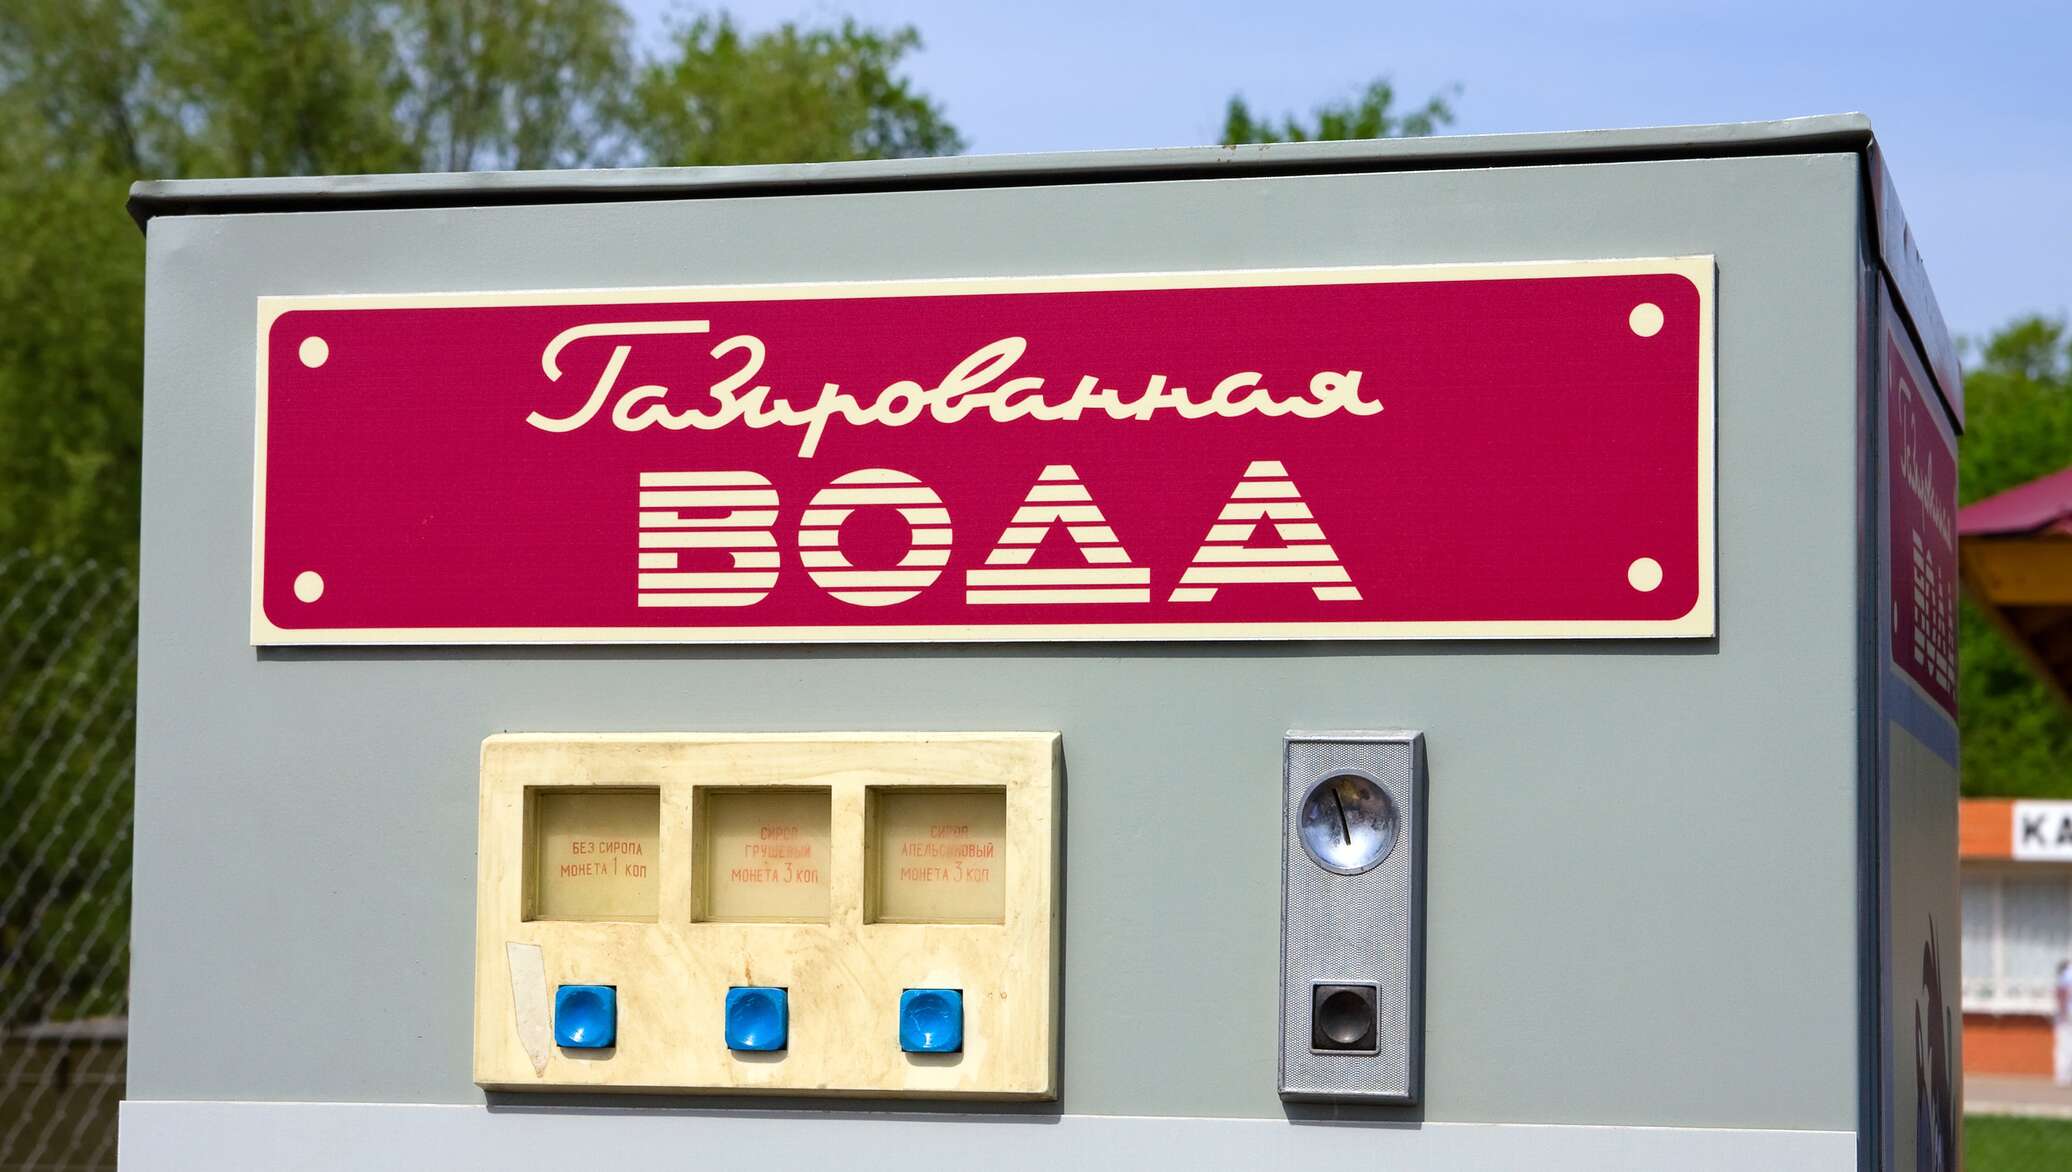 Блины газированная вода тонкие. Автомат с газировкой. Советский автомат газированной воды. ГАЗ вода аппарат. Советские автоматы с газировкой.